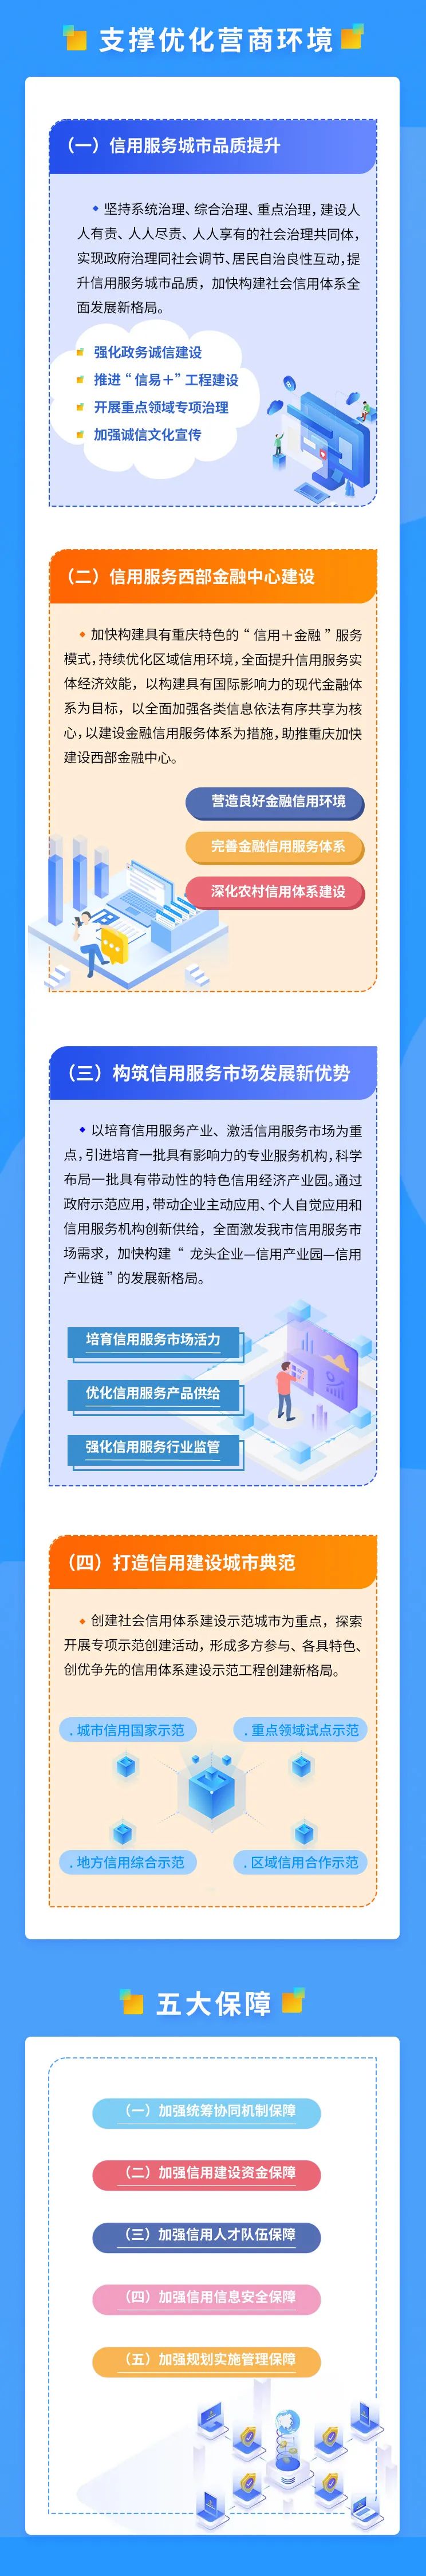 重庆市发展改革委 供图